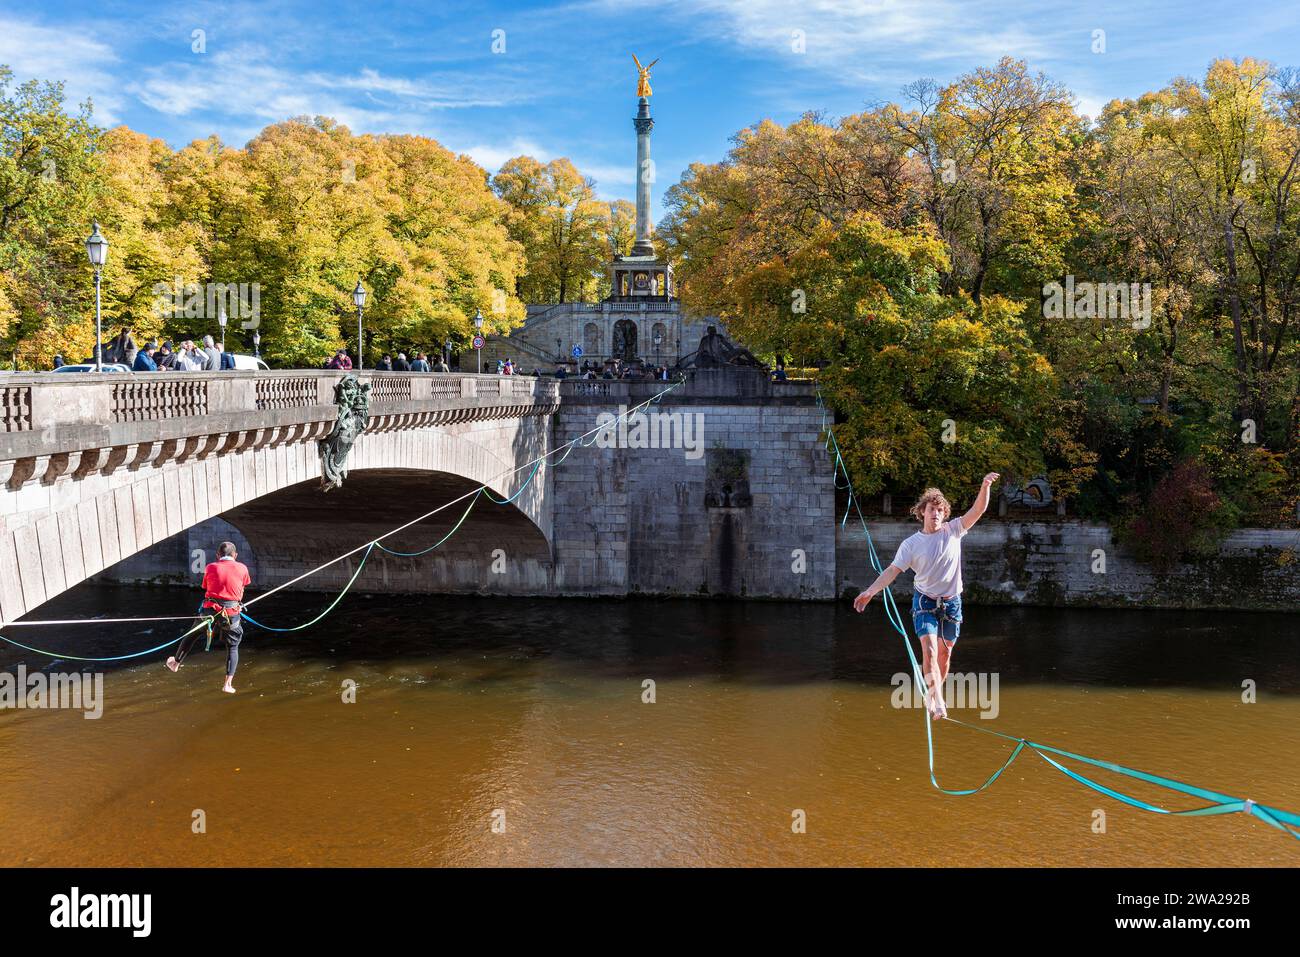 Un homme se balance sur une slackline au-dessus de l'Isar au pont Luitpold sous le soleil d'automne, Munich, Bavière, Allemagne Banque D'Images